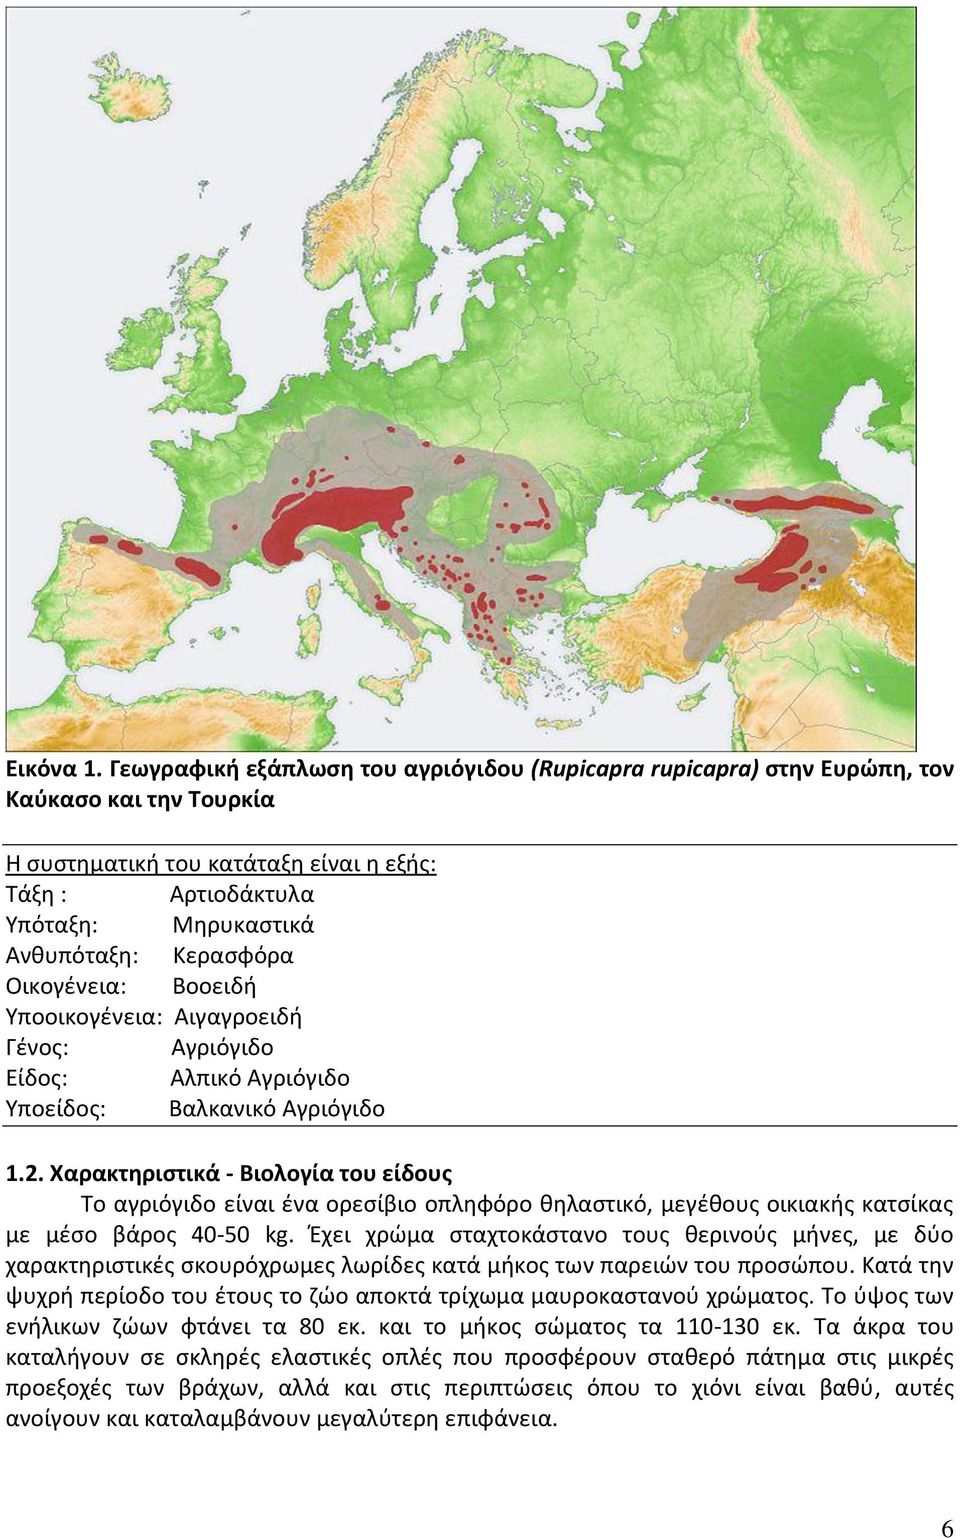 Κερασφόρα Οικογένεια: Βοοειδή Υποοικογένεια: Αιγαγροειδή Γένος: Αγριόγιδο Είδος: Αλπικό Αγριόγιδο Υποείδος: Βαλκανικό Αγριόγιδο 1.2.